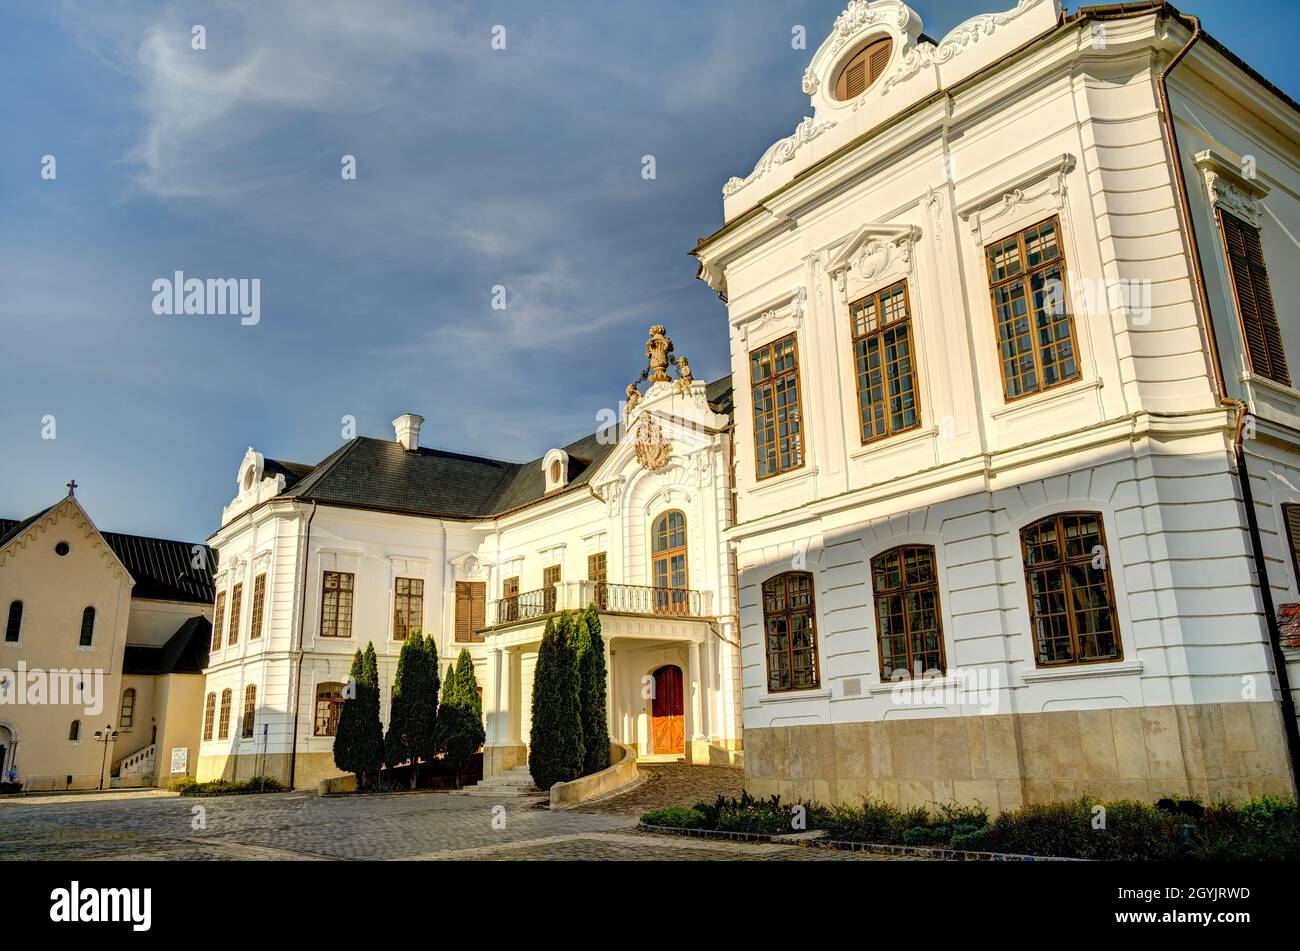 Veszprém, Hungary Stock Photo